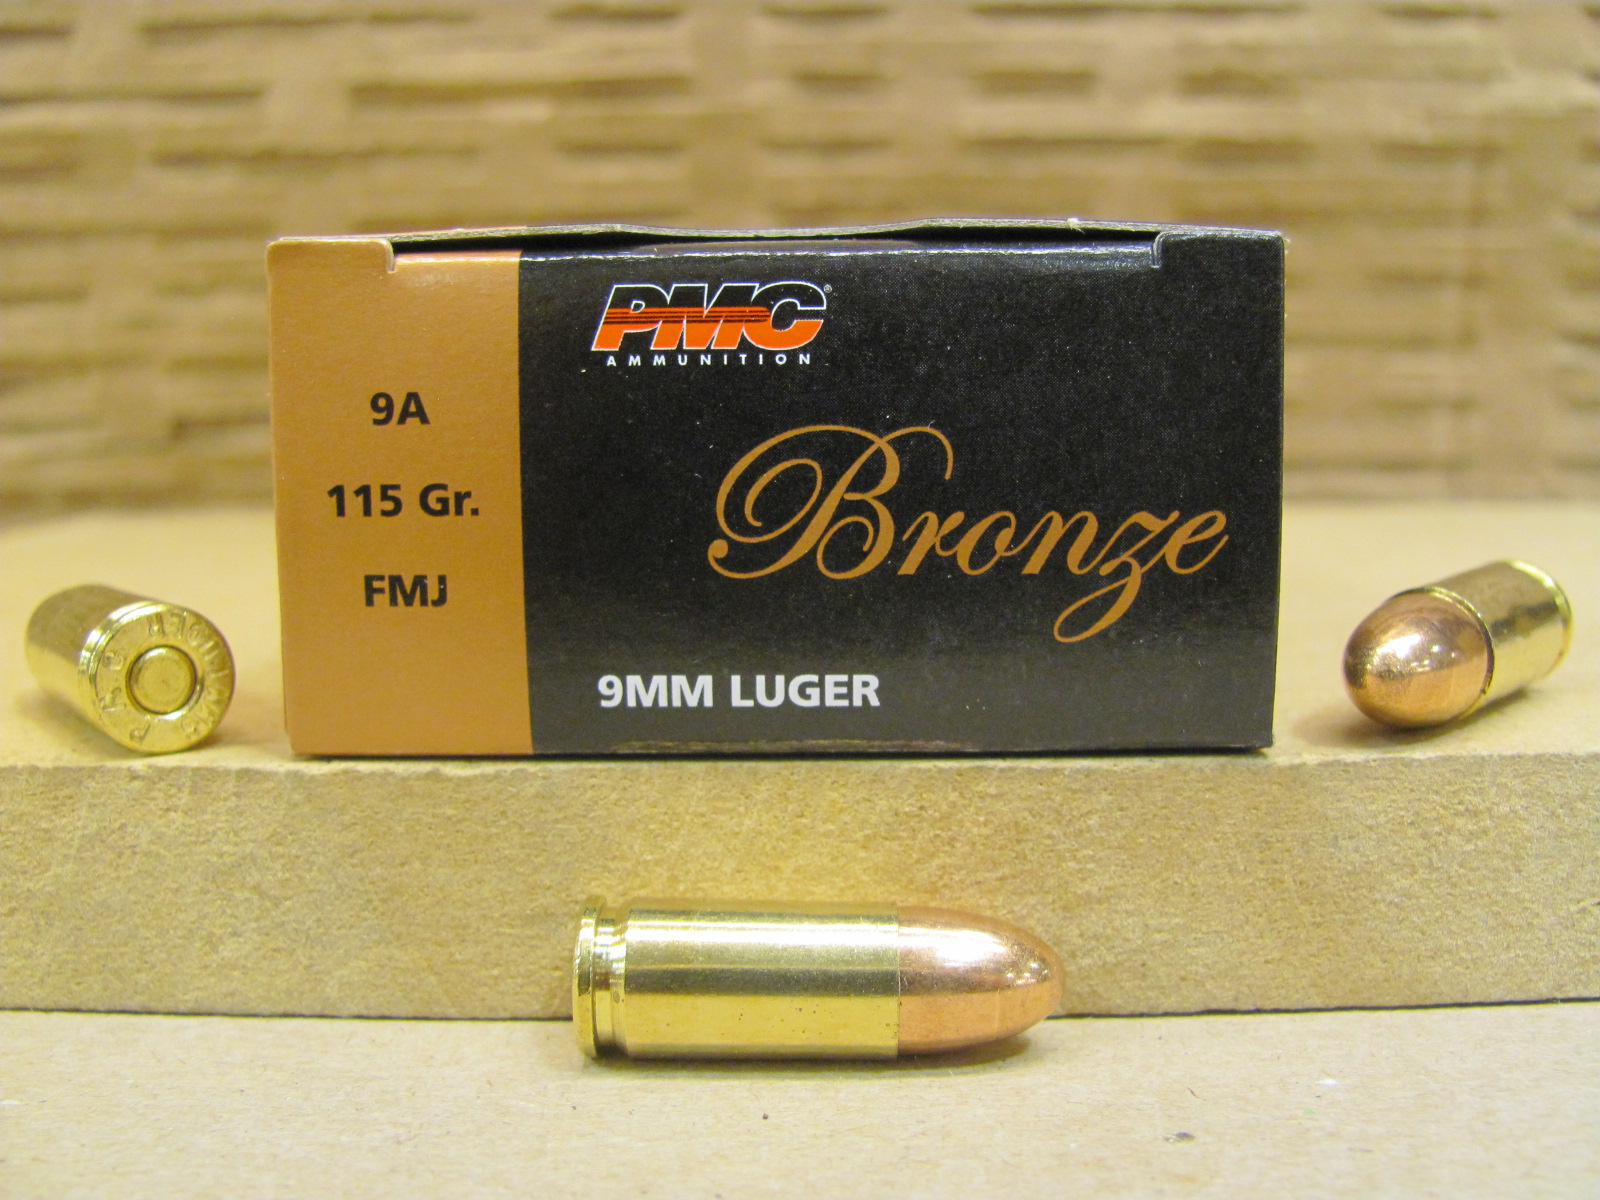 50 Round Box - PMC 9mm Luger 115 Grain FMJ Ammo - 9A | SGAmmo.com